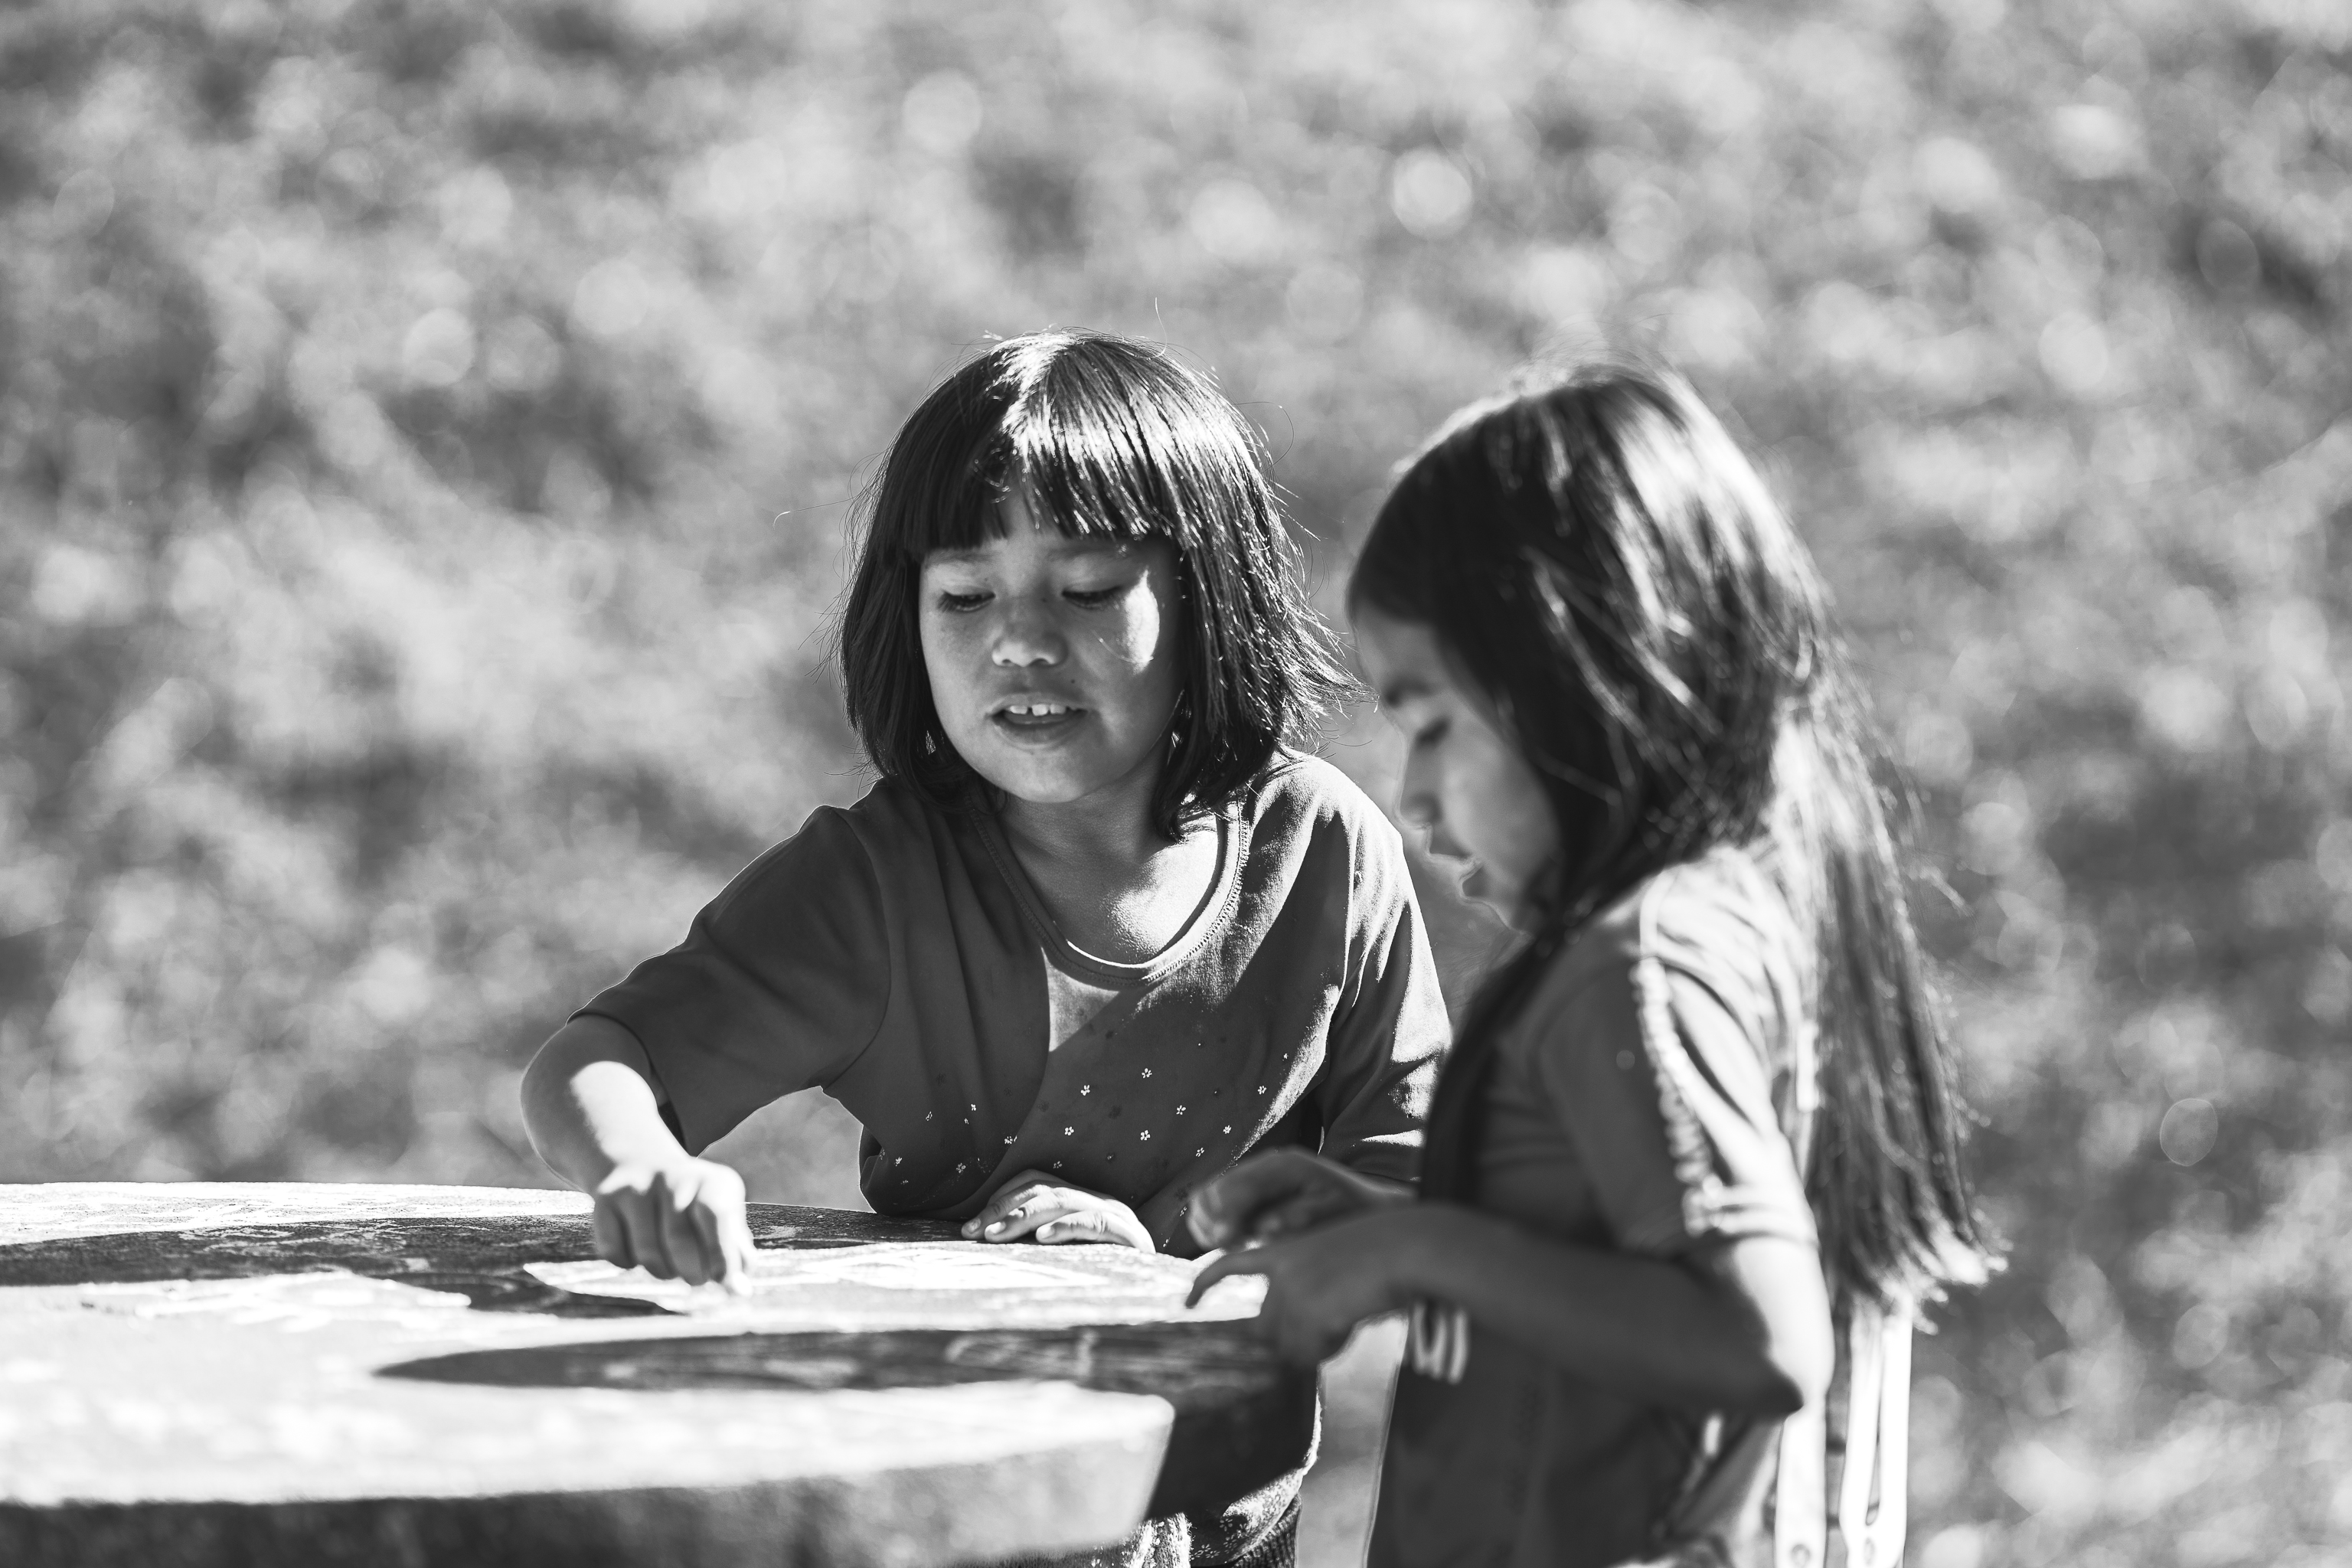 Com novas disciplinas do ensino médio, estudantes indígenas desenvolvem sua cultura em sala de aula.